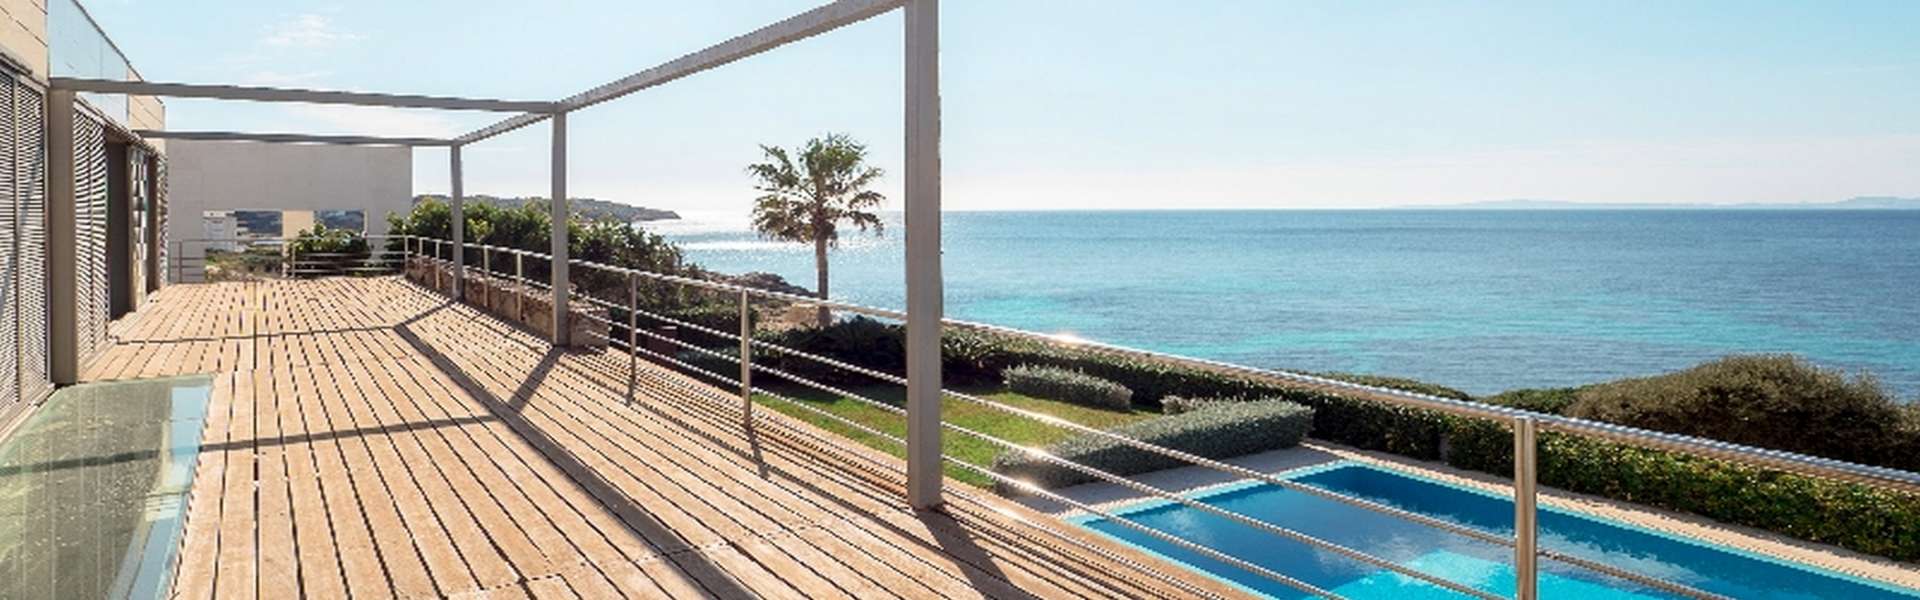 Palma/Son Veri Nou - Herrliches Haus mit atemberaubenden Panoramablick auf das Meer